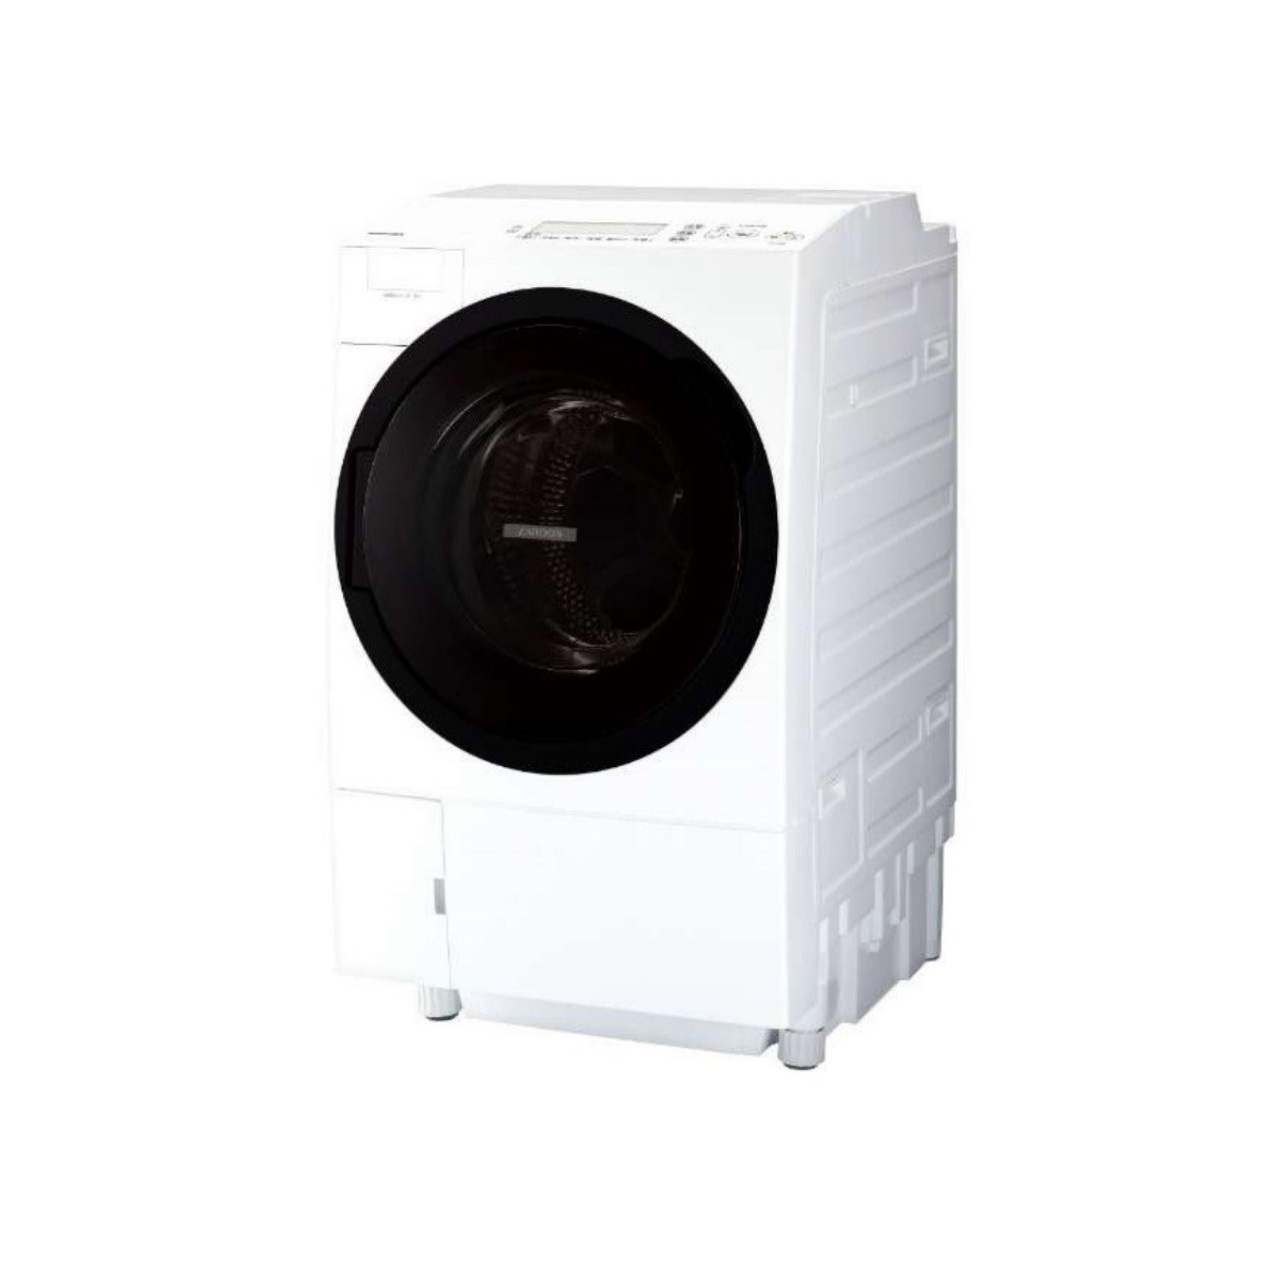 東芝ZABOON TW-117A7Lドラム式洗濯乾燥機